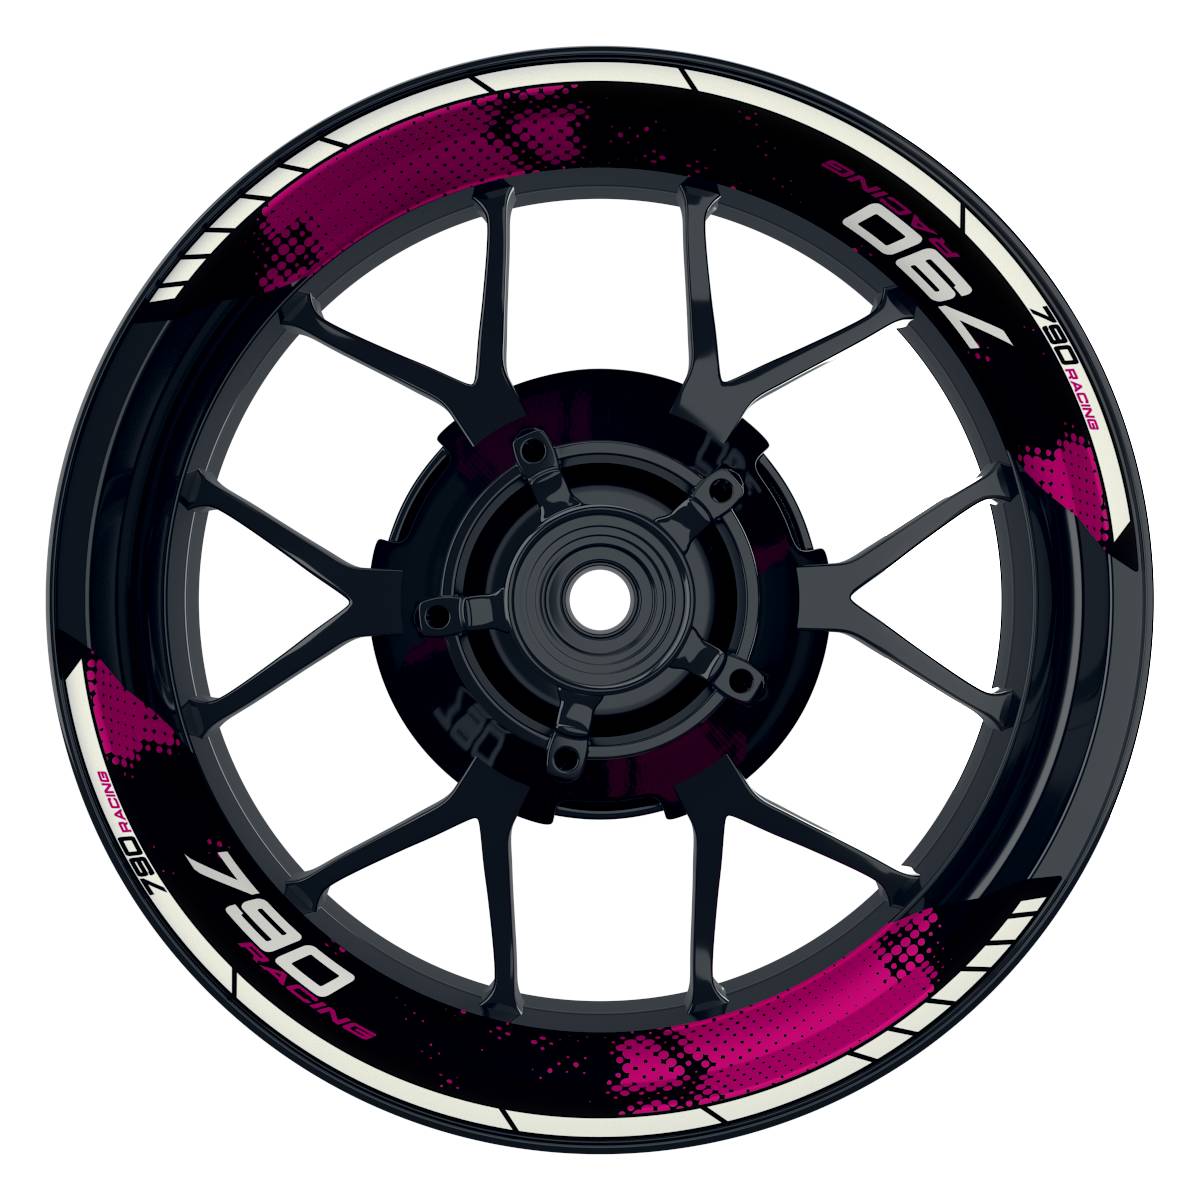 KTM Racing 790 Dots schwarz pink Frontansicht